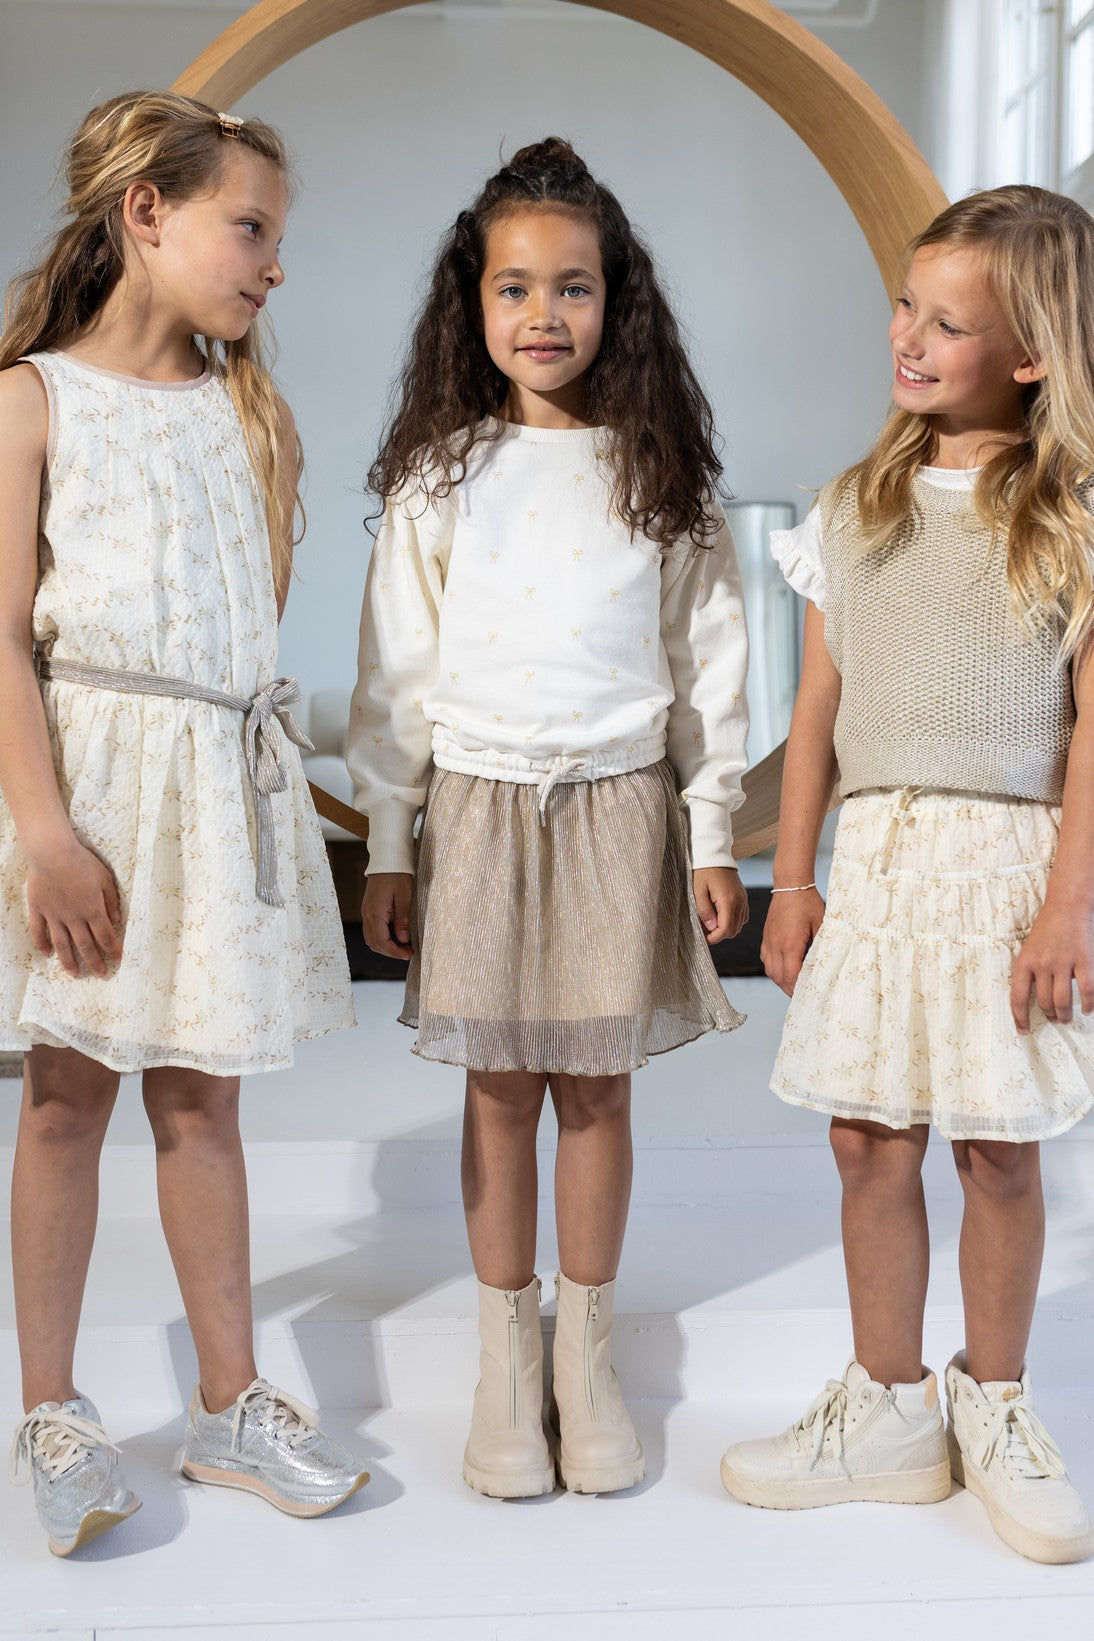 Meisjes Sweater Aop Bow van Like Flo in de kleur Off white in maat 116.